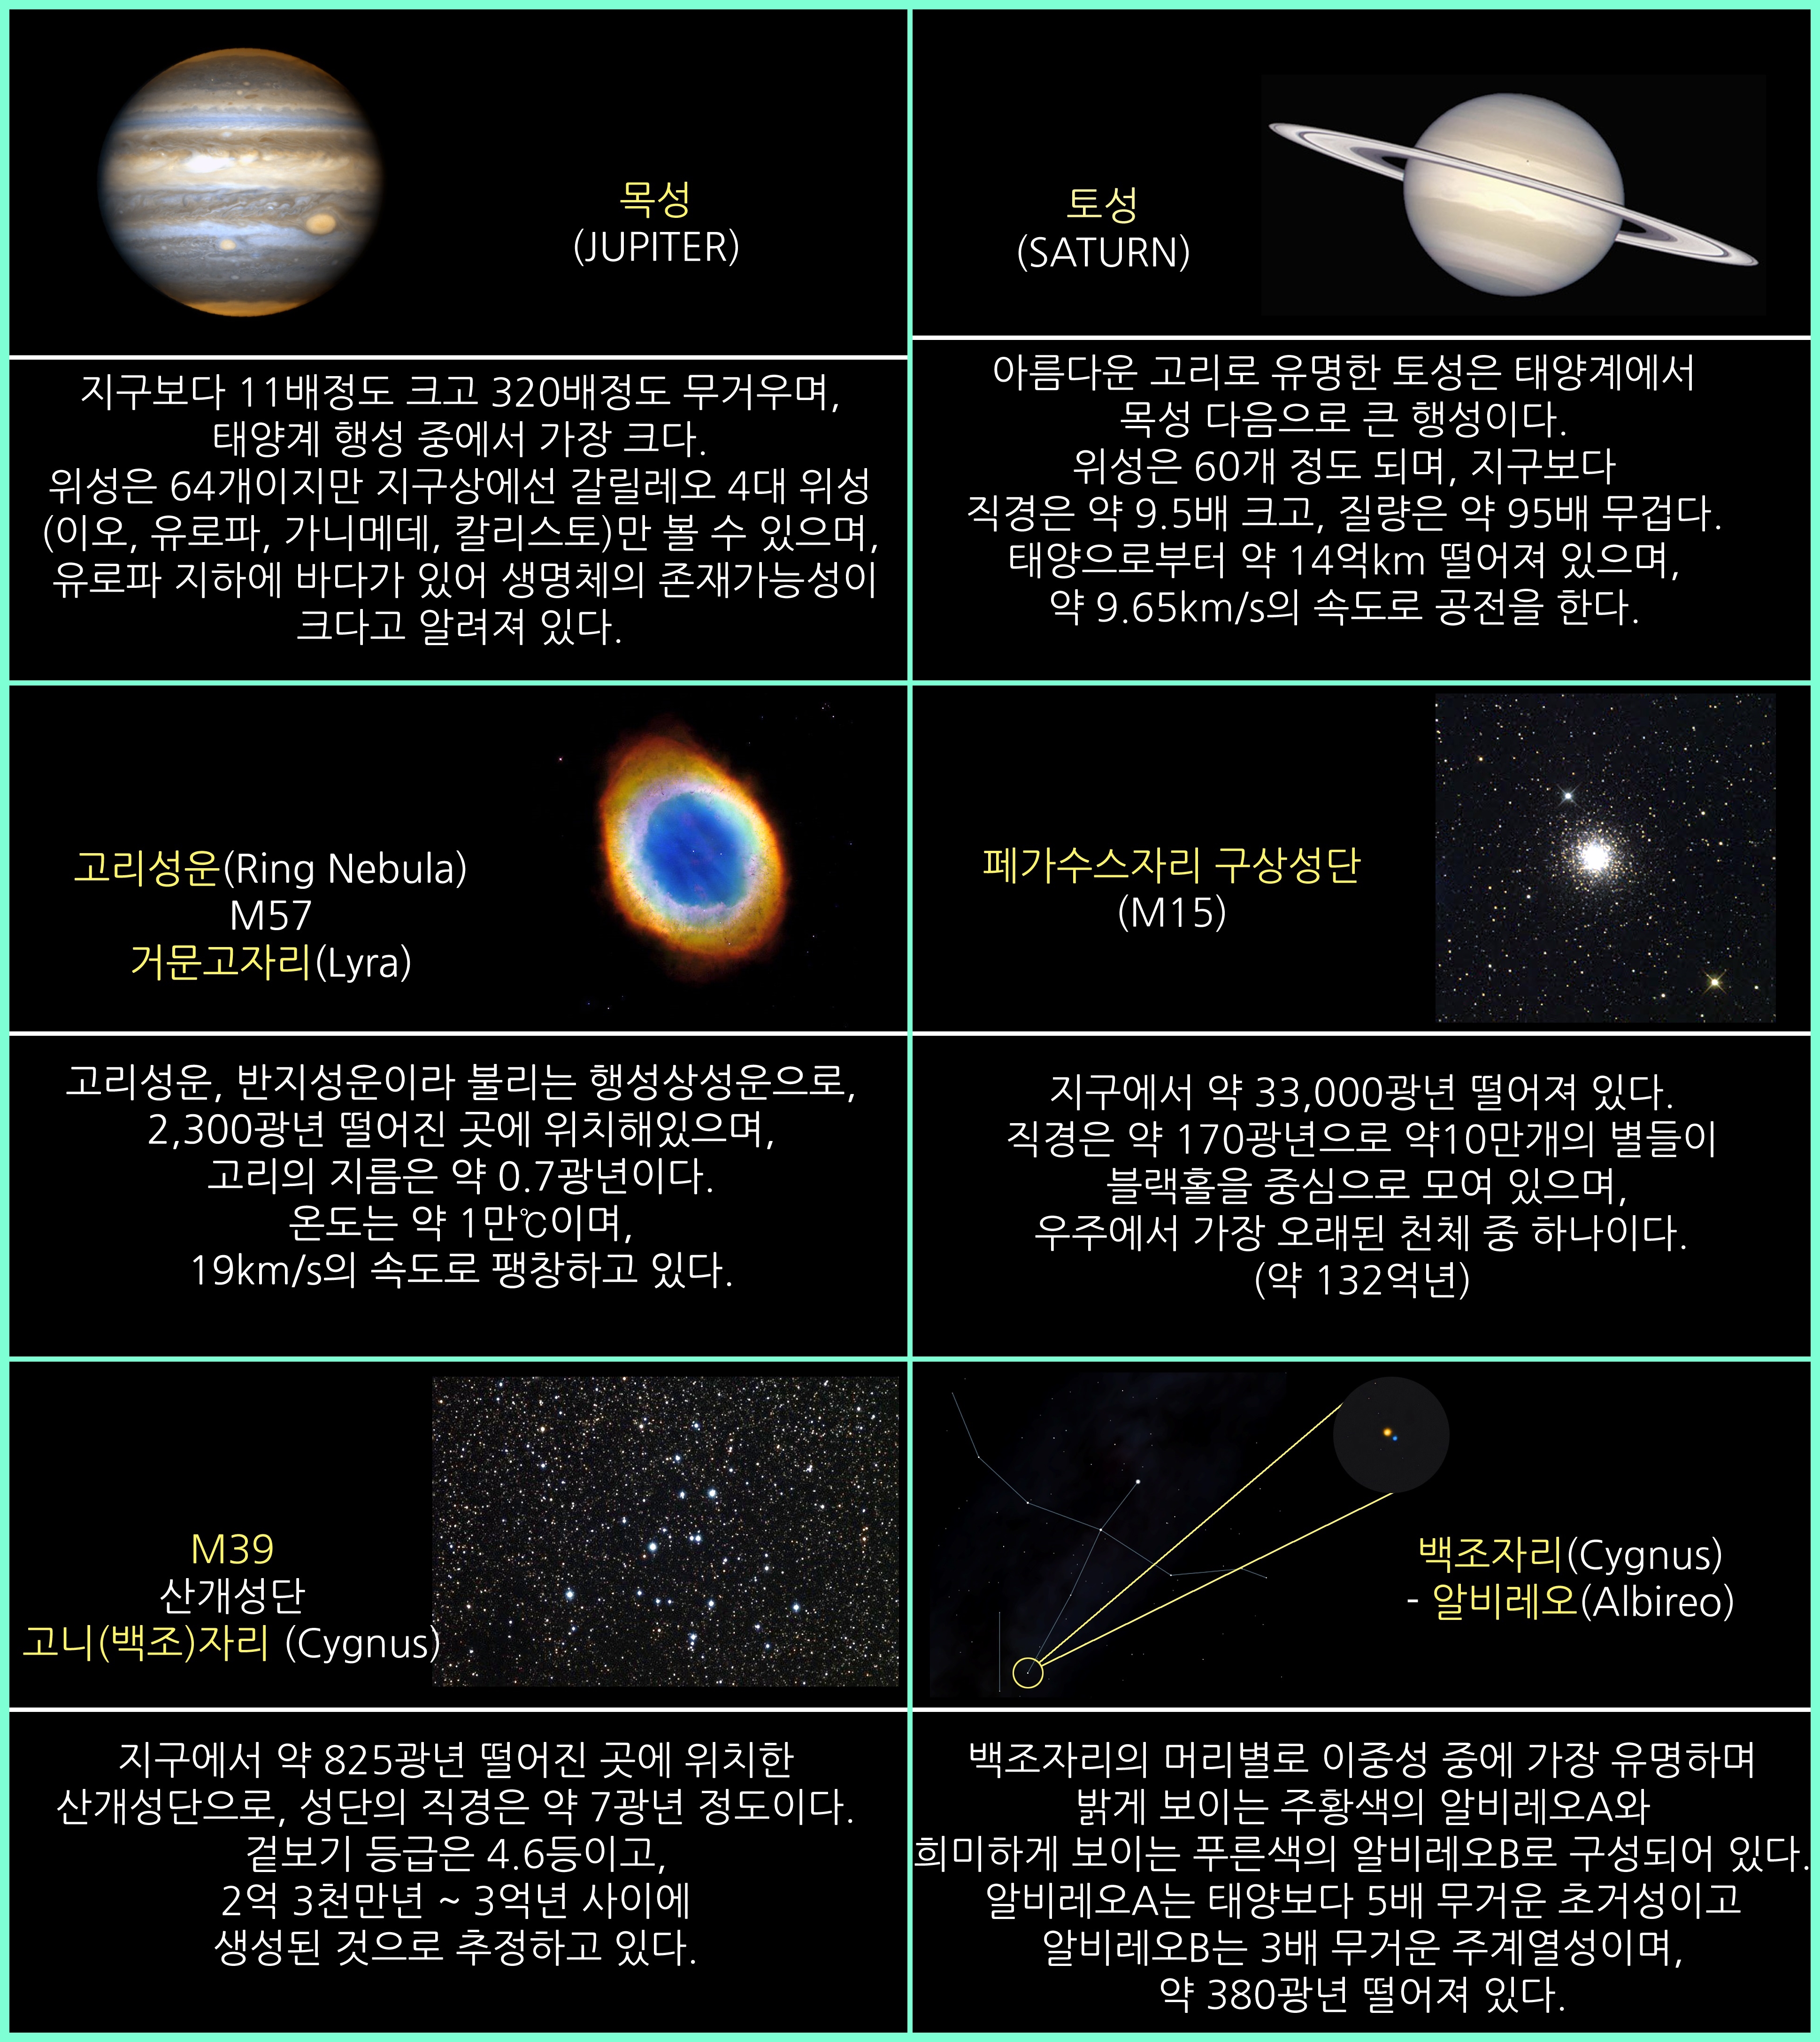 2019년 9월 주요 천체관측 대상